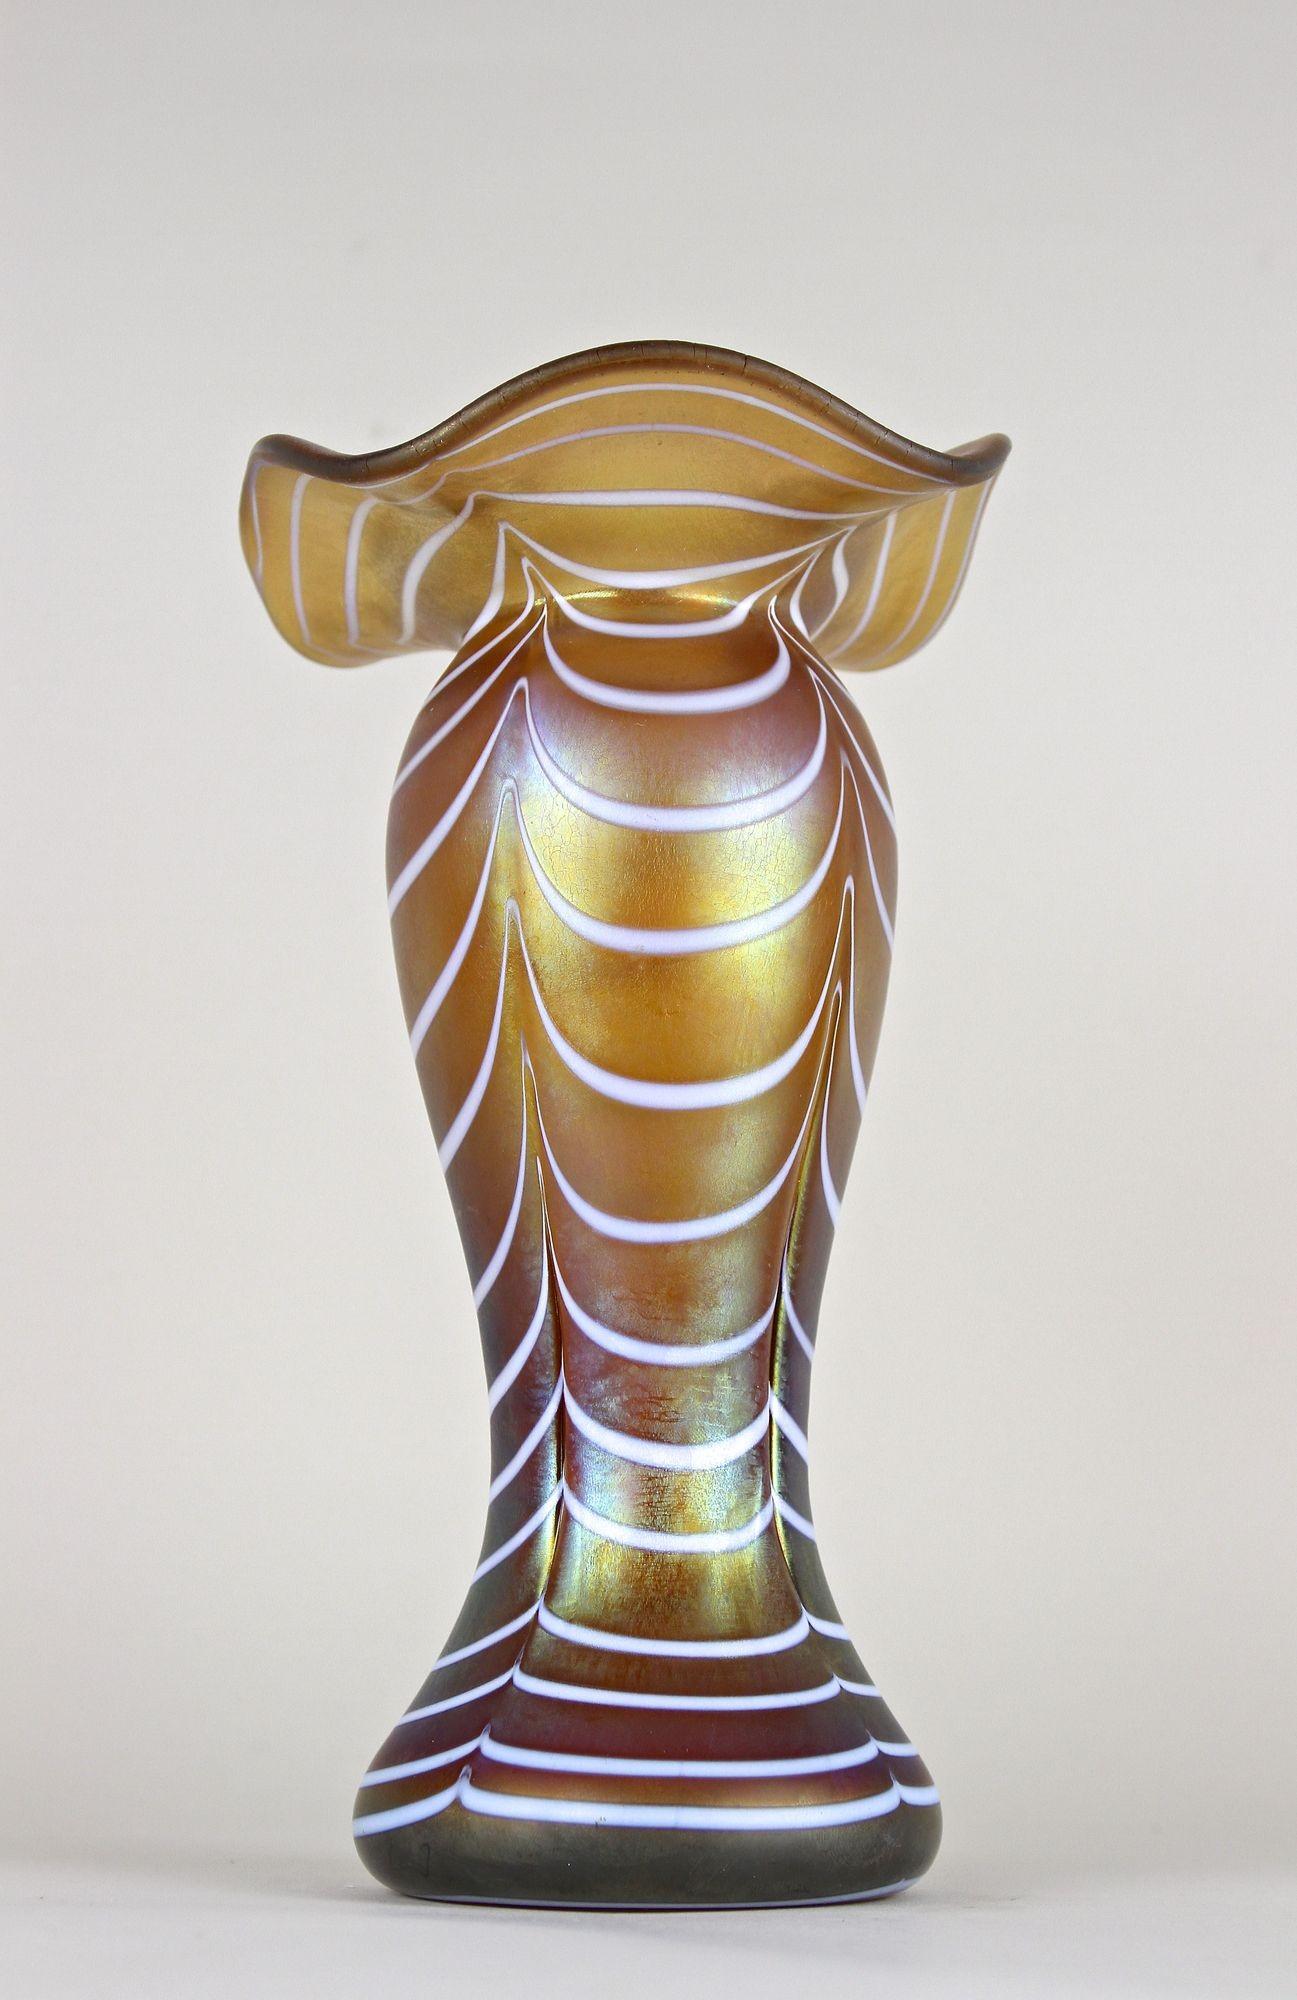 Bezaubernde, hochdekorative Vase aus irisierendem Glas aus der Zeit des Jugendstils in Bohemia um 1915. Ein wirklich schönes Stück Glaskunst aus dem frühen 20. Jahrhundert, das Loetz Witwe zugeschrieben wird. Ein außergewöhnliches Design mit einem